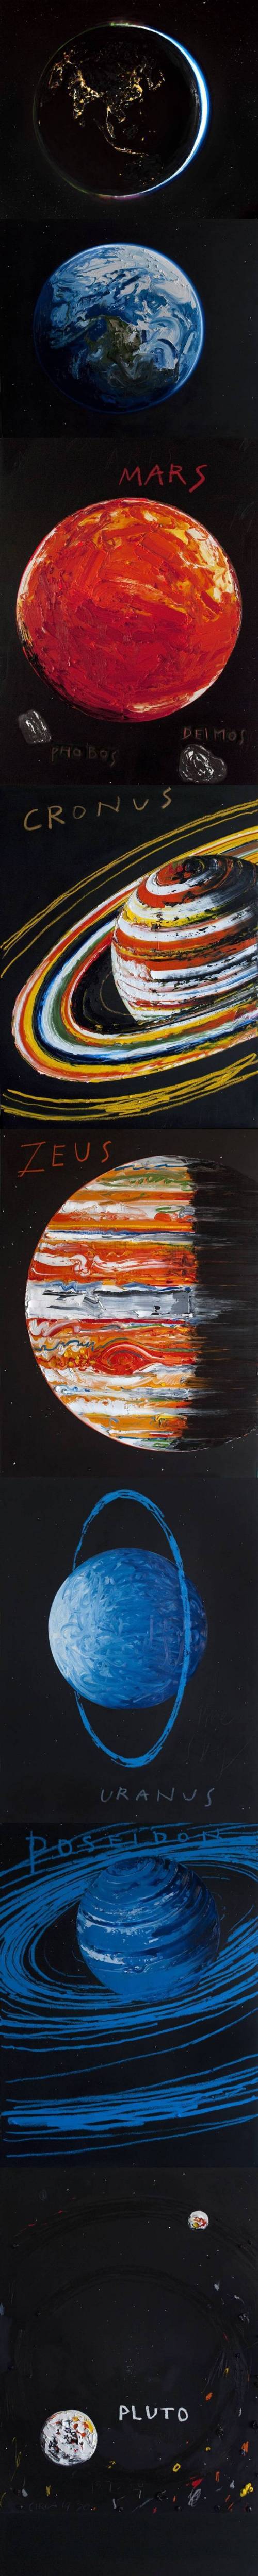 [스압] 캐나다 예술가 "Erik Olson"이 그린 우주.jpg